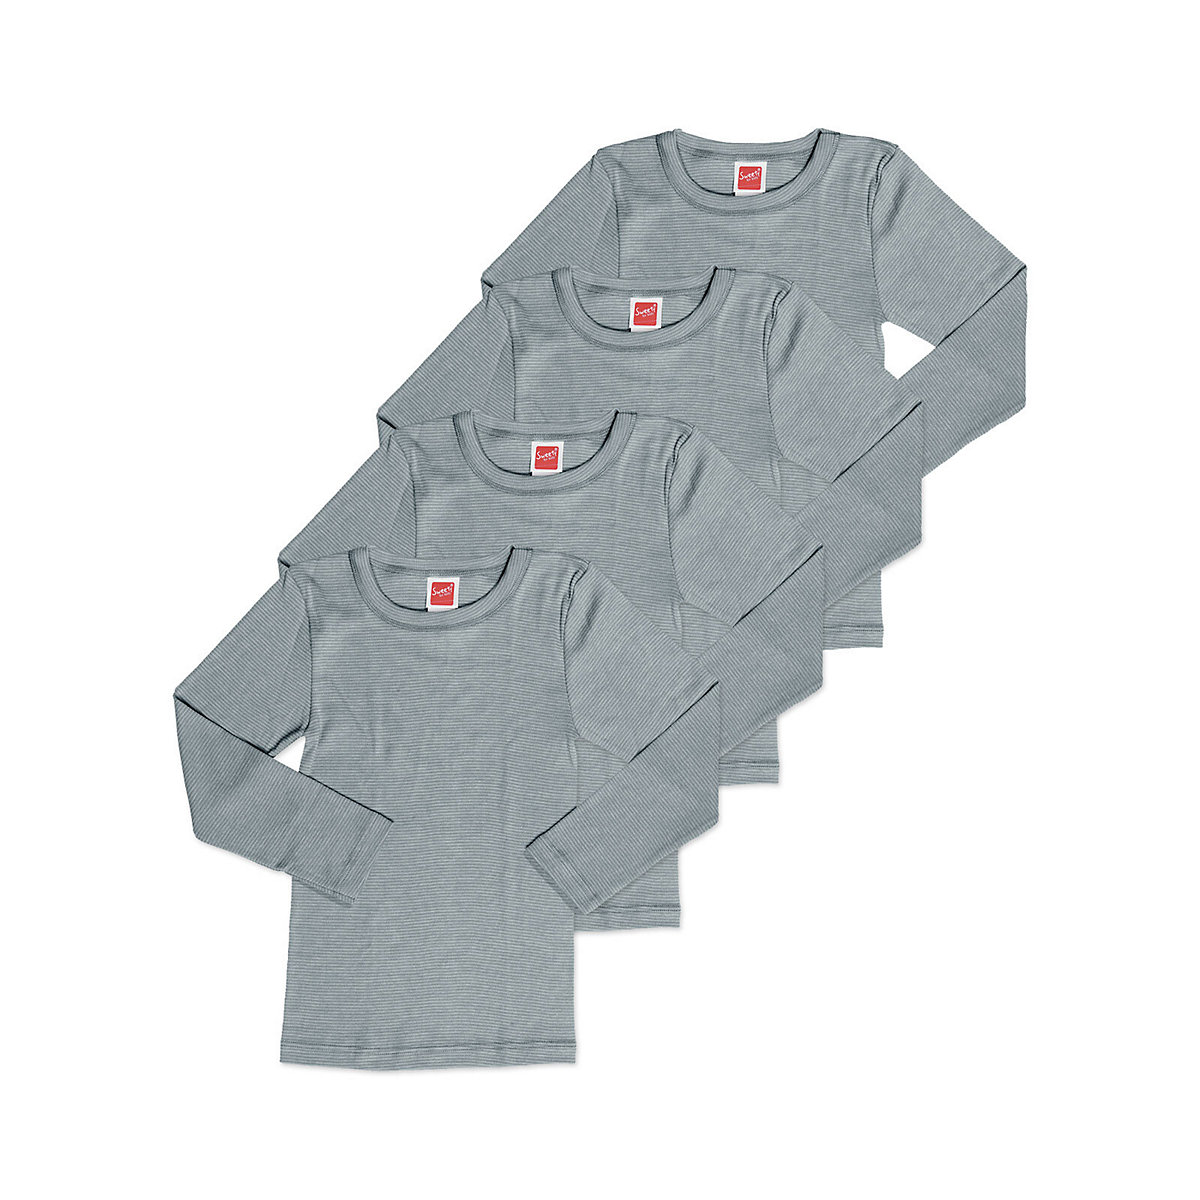 Sweety for Kids 4er Sparpack Kinder Shirt Funktionswäsche Unterhemden für Kinder grau